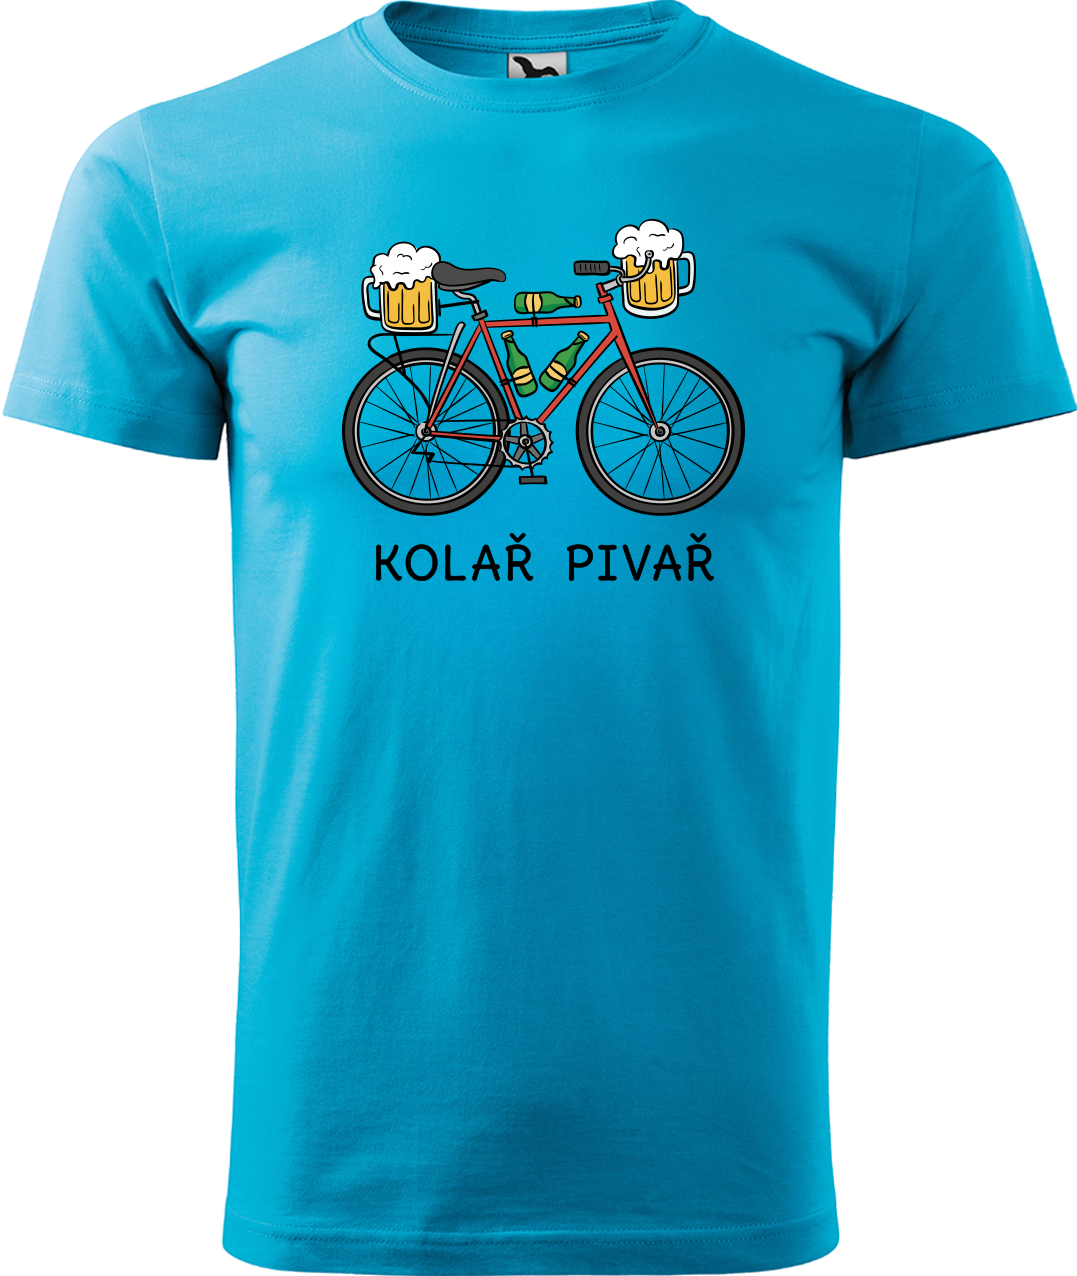 Pánské tričko s kolem - Kolař pivař Velikost: L, Barva: Tyrkysová (44)